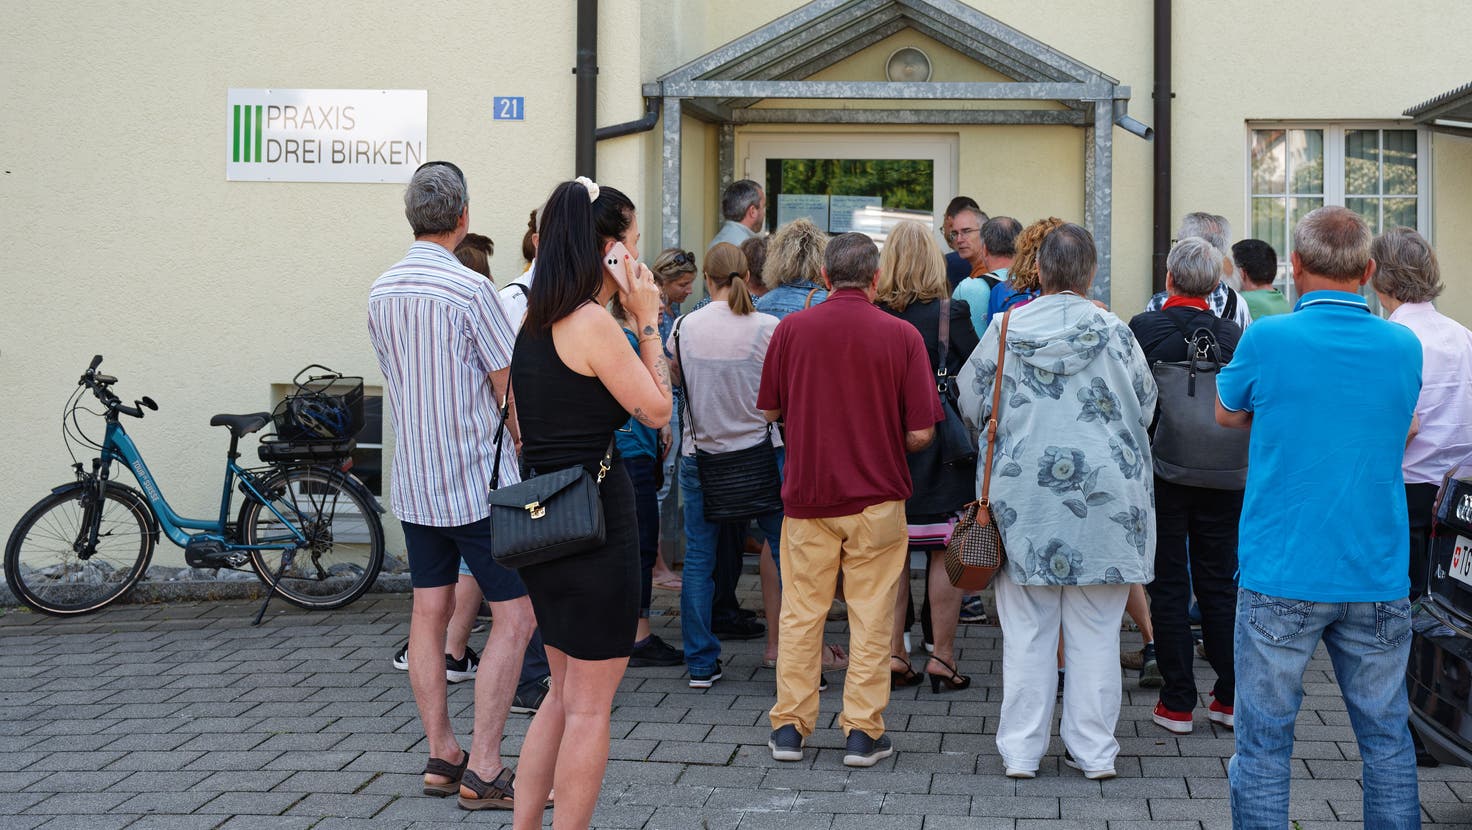 Eine grosse Menschentraube wartet vor dem Eingang der Praxis Drei Birken in Freidorf, um die Krankenakten abzuholen. (Bild: Manuel Nagel)